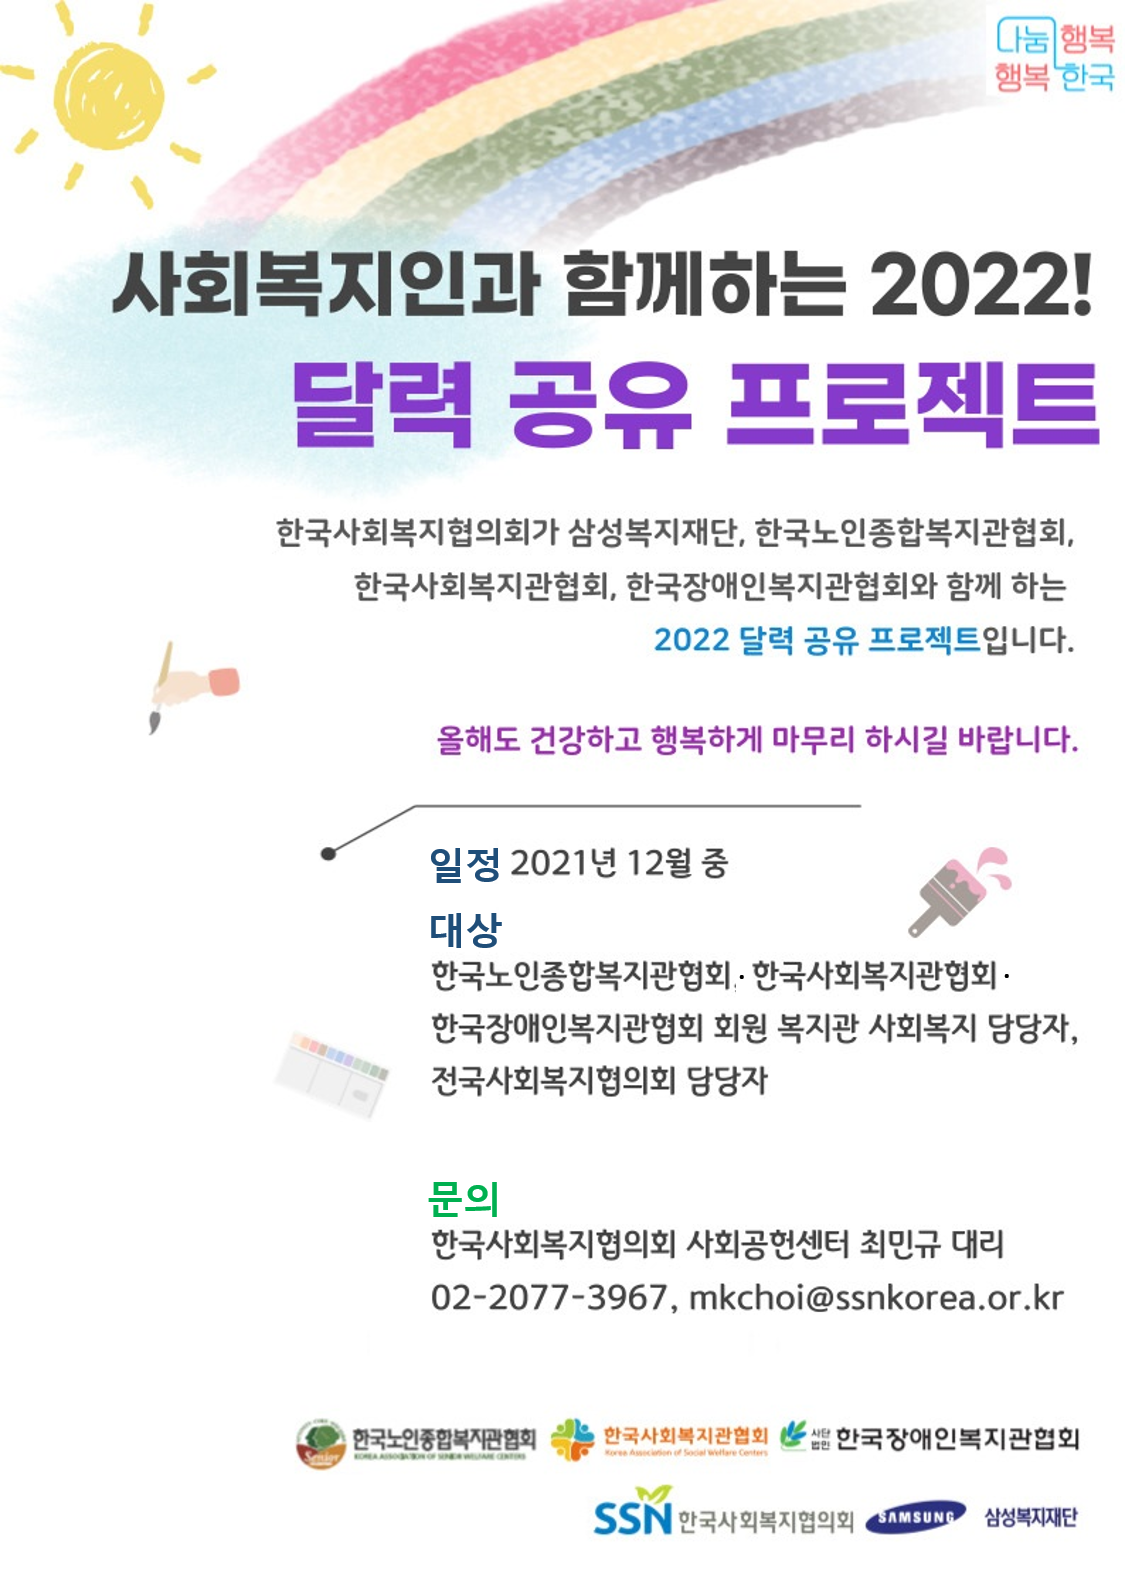 붙임1_사회복지인과 함께하는 2022 달력공유프로젝트_온라인_포스터_웹용.png